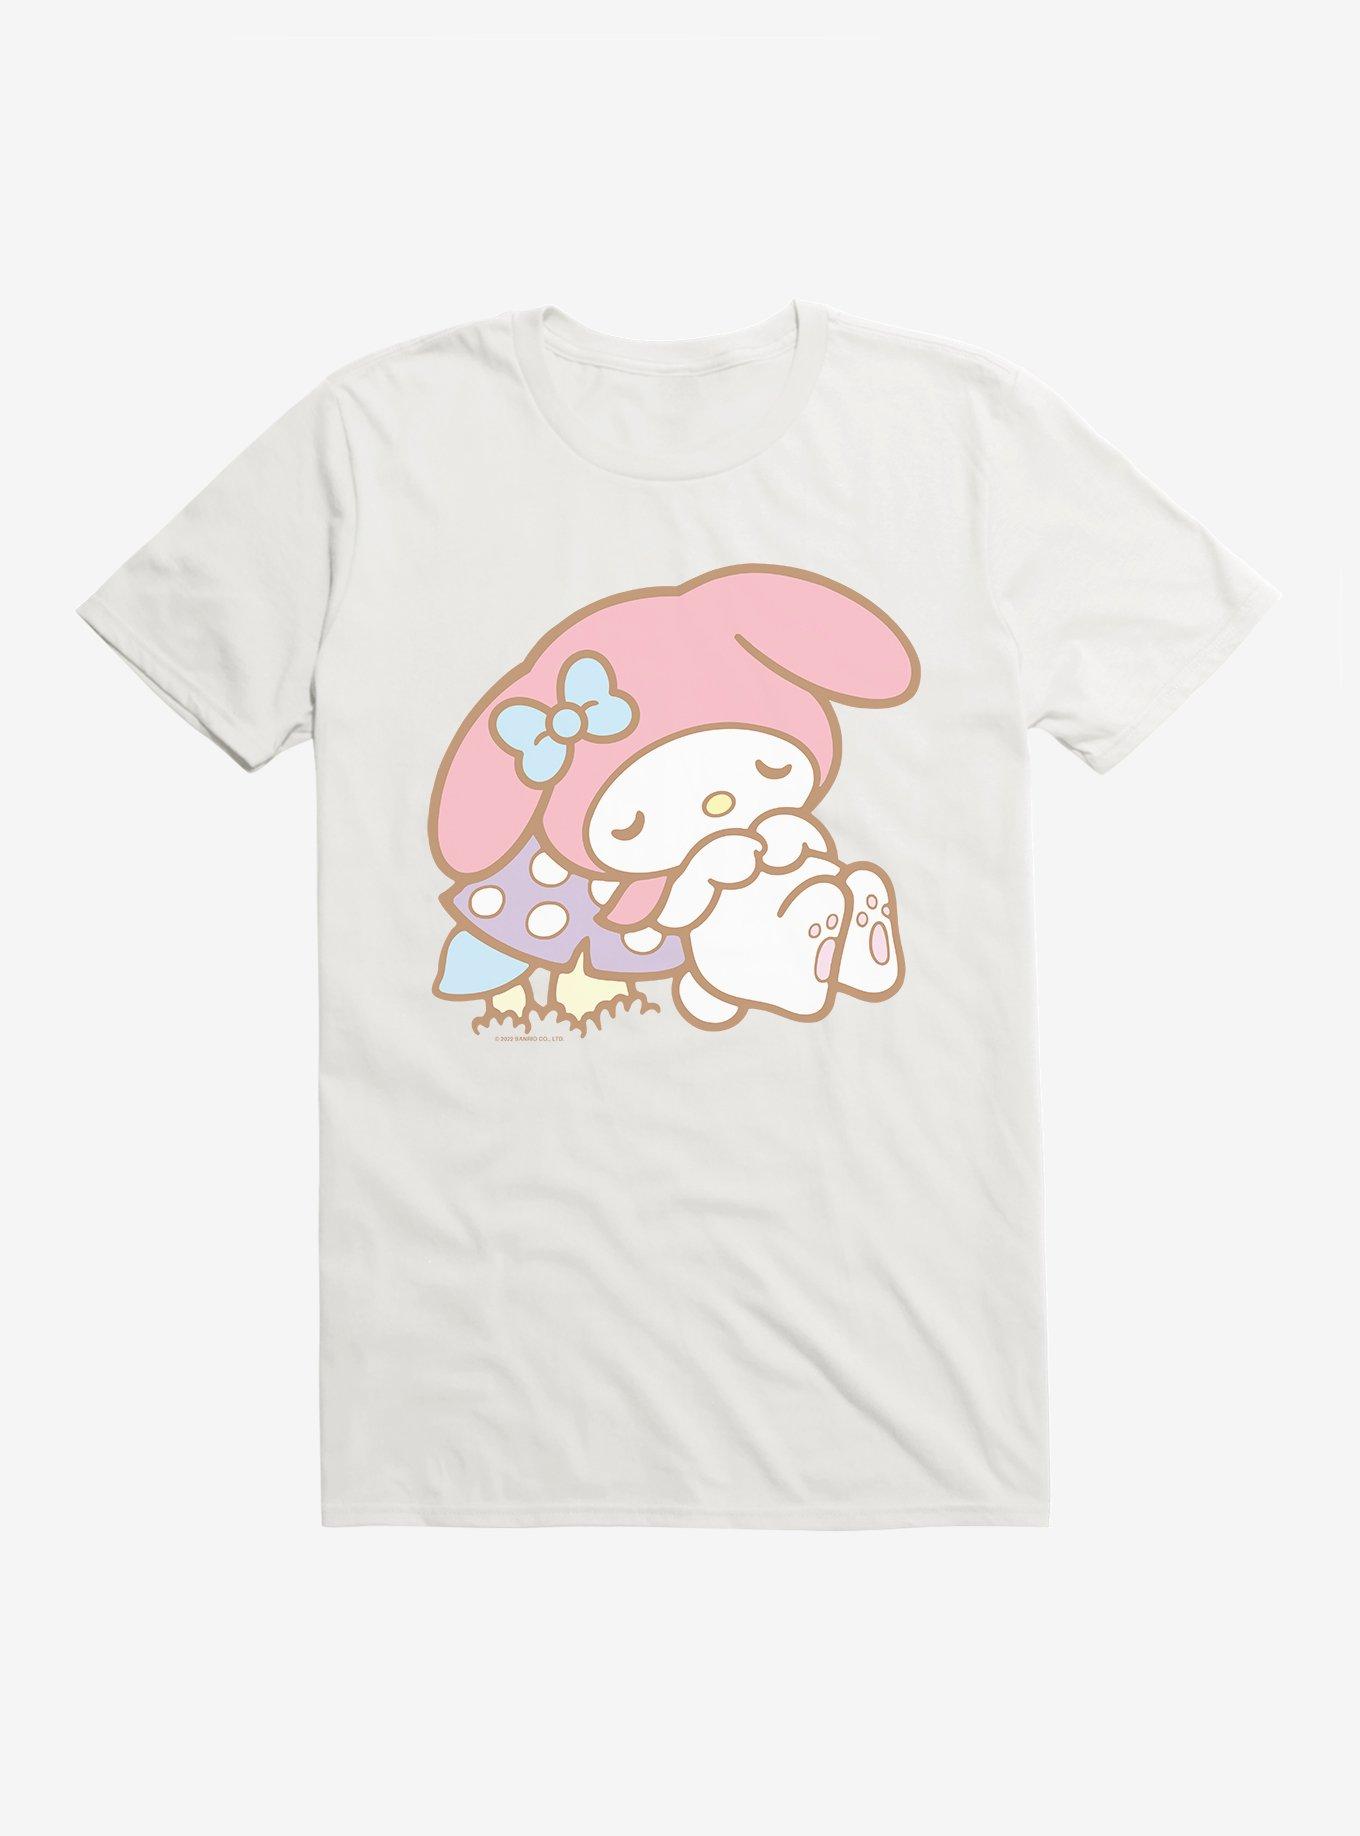 My Melody Napping T-Shirt